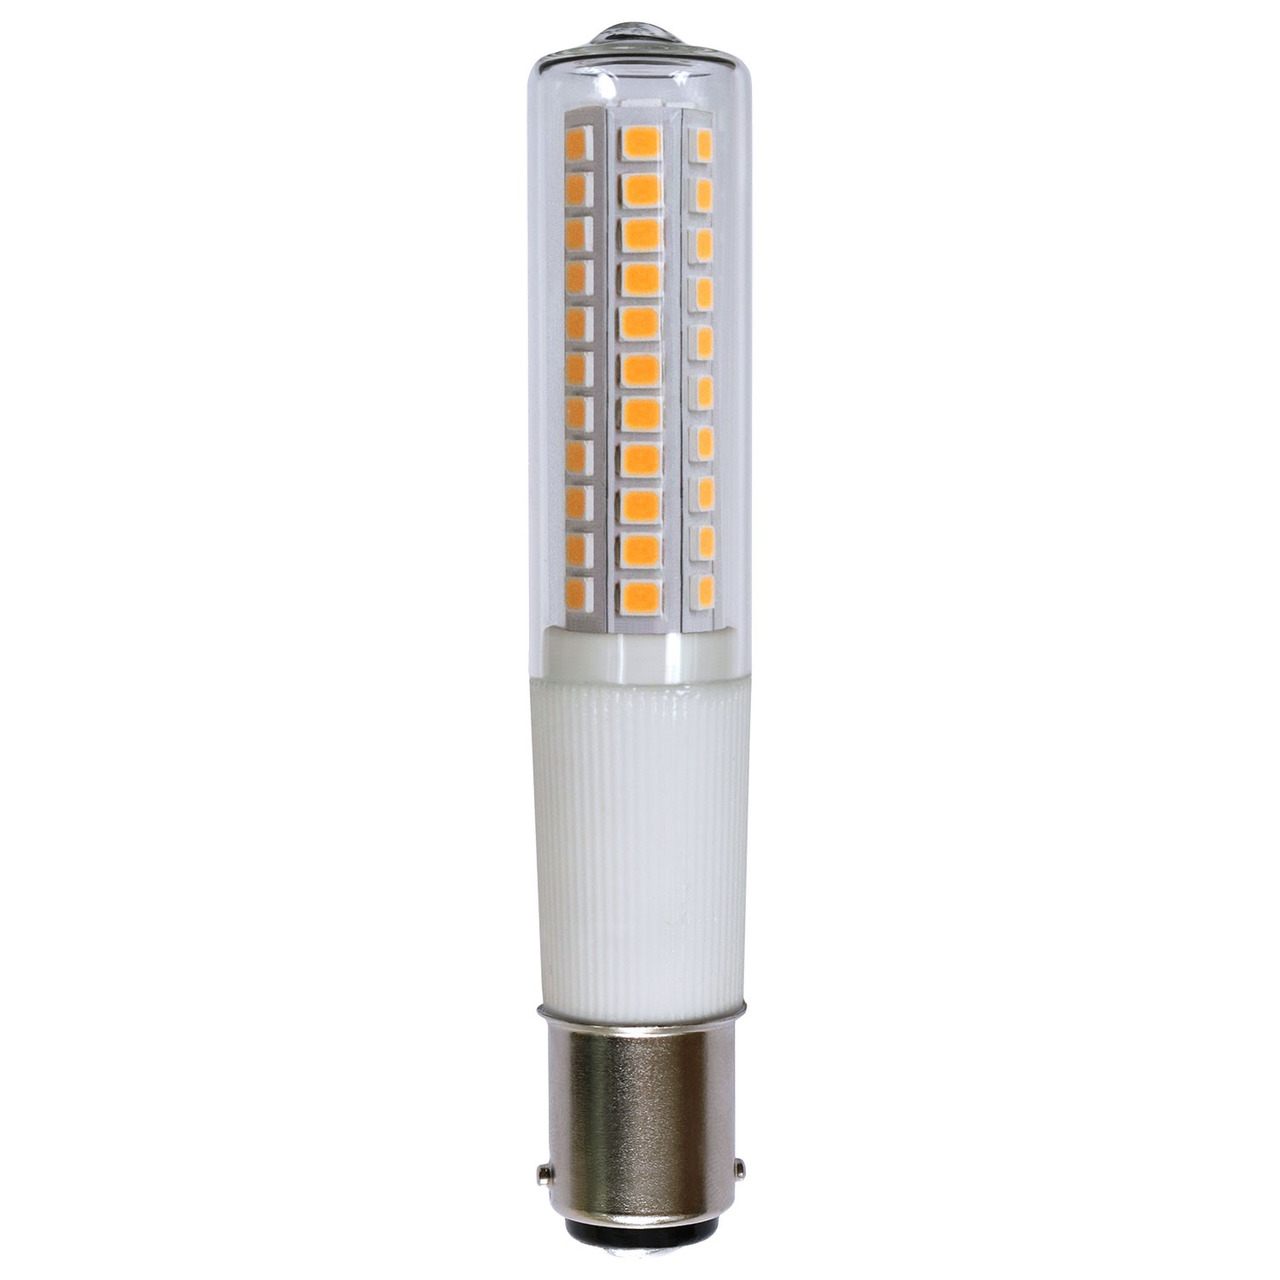 LEDmaxx 8-W-LED-Lampe T18- B15d- 840 lm- warmweiss (3000 K)- dimmbar unter Beleuchtung